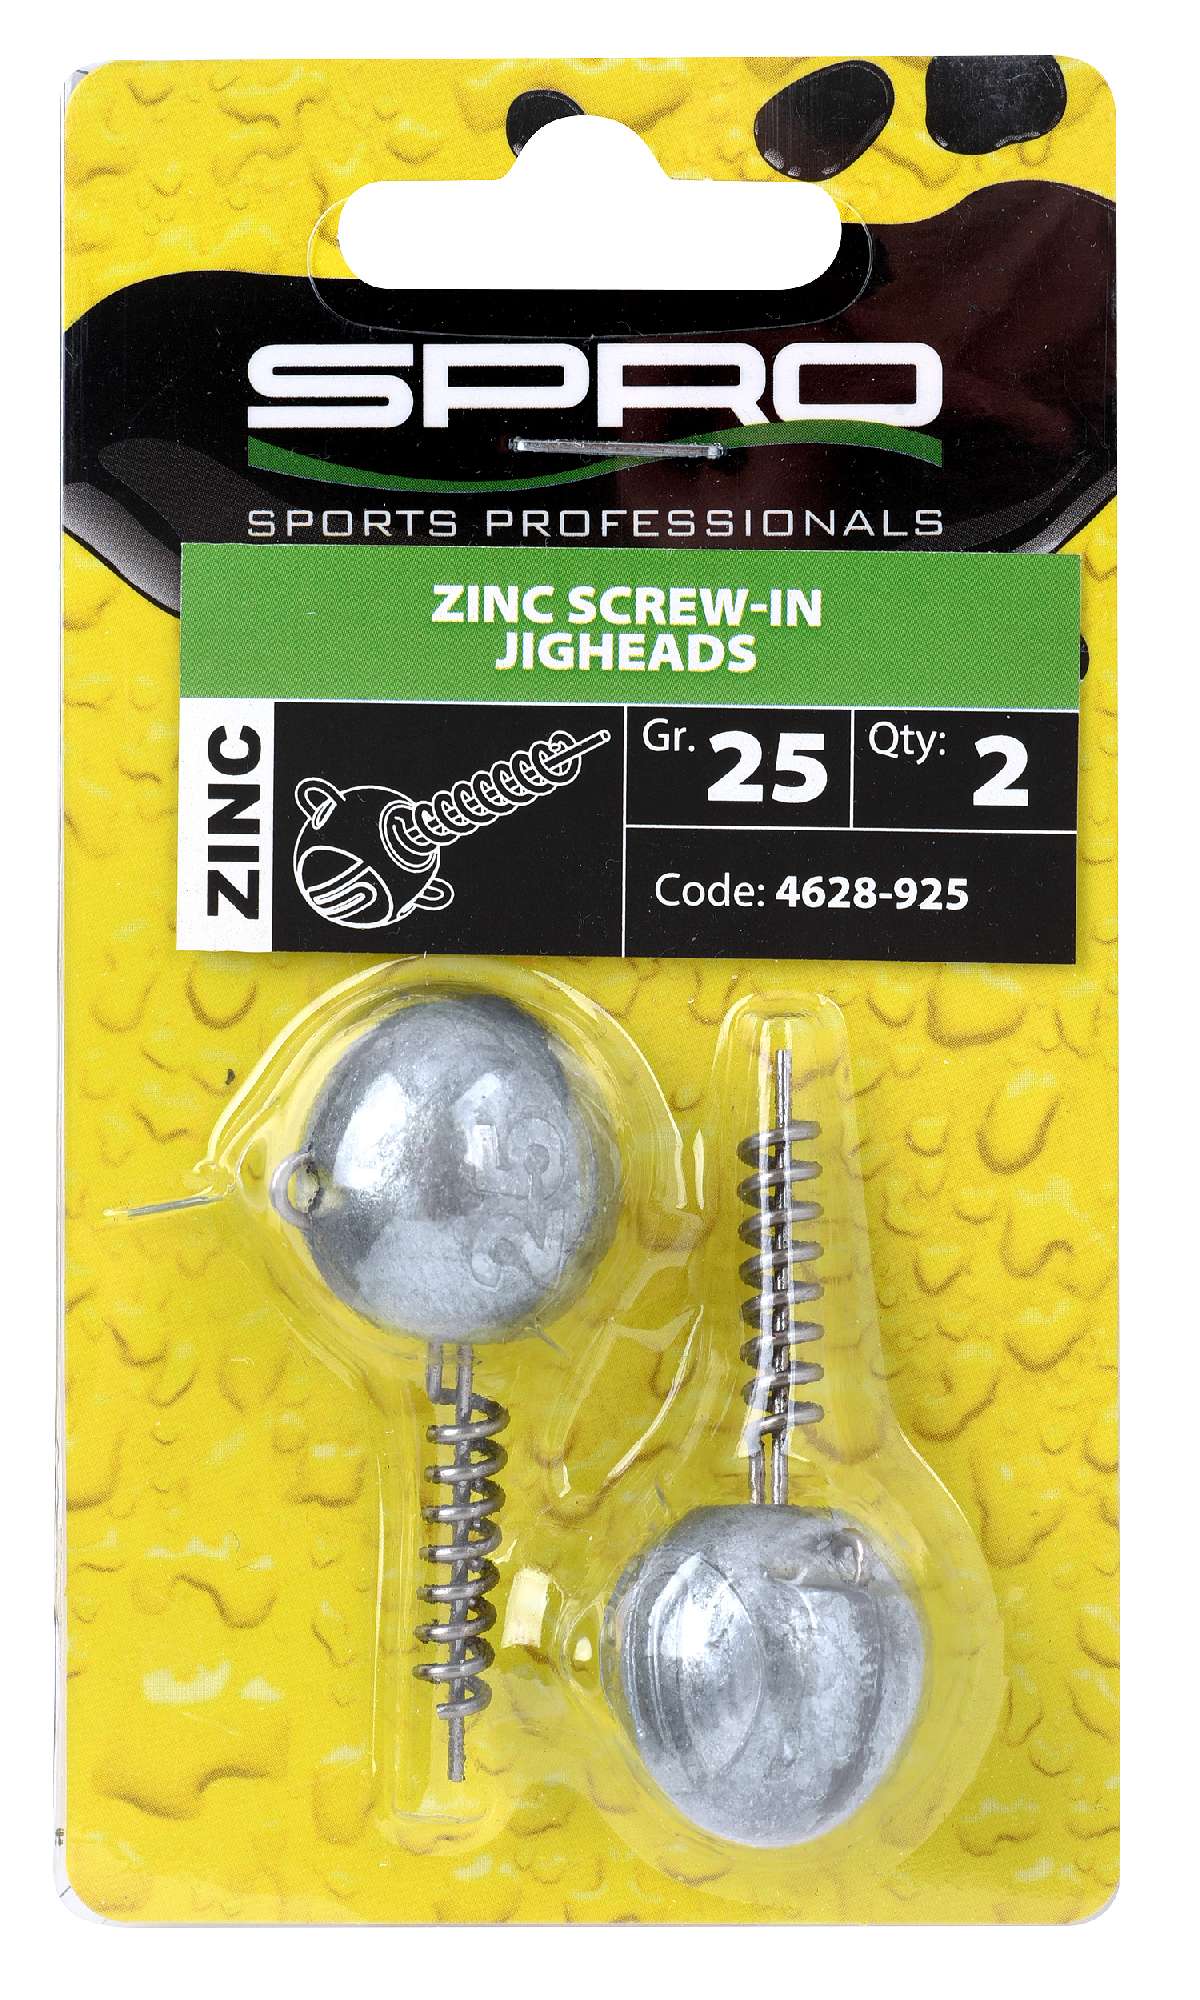 Spro Zinc Screw-In Jigheads 25 gr 2st.